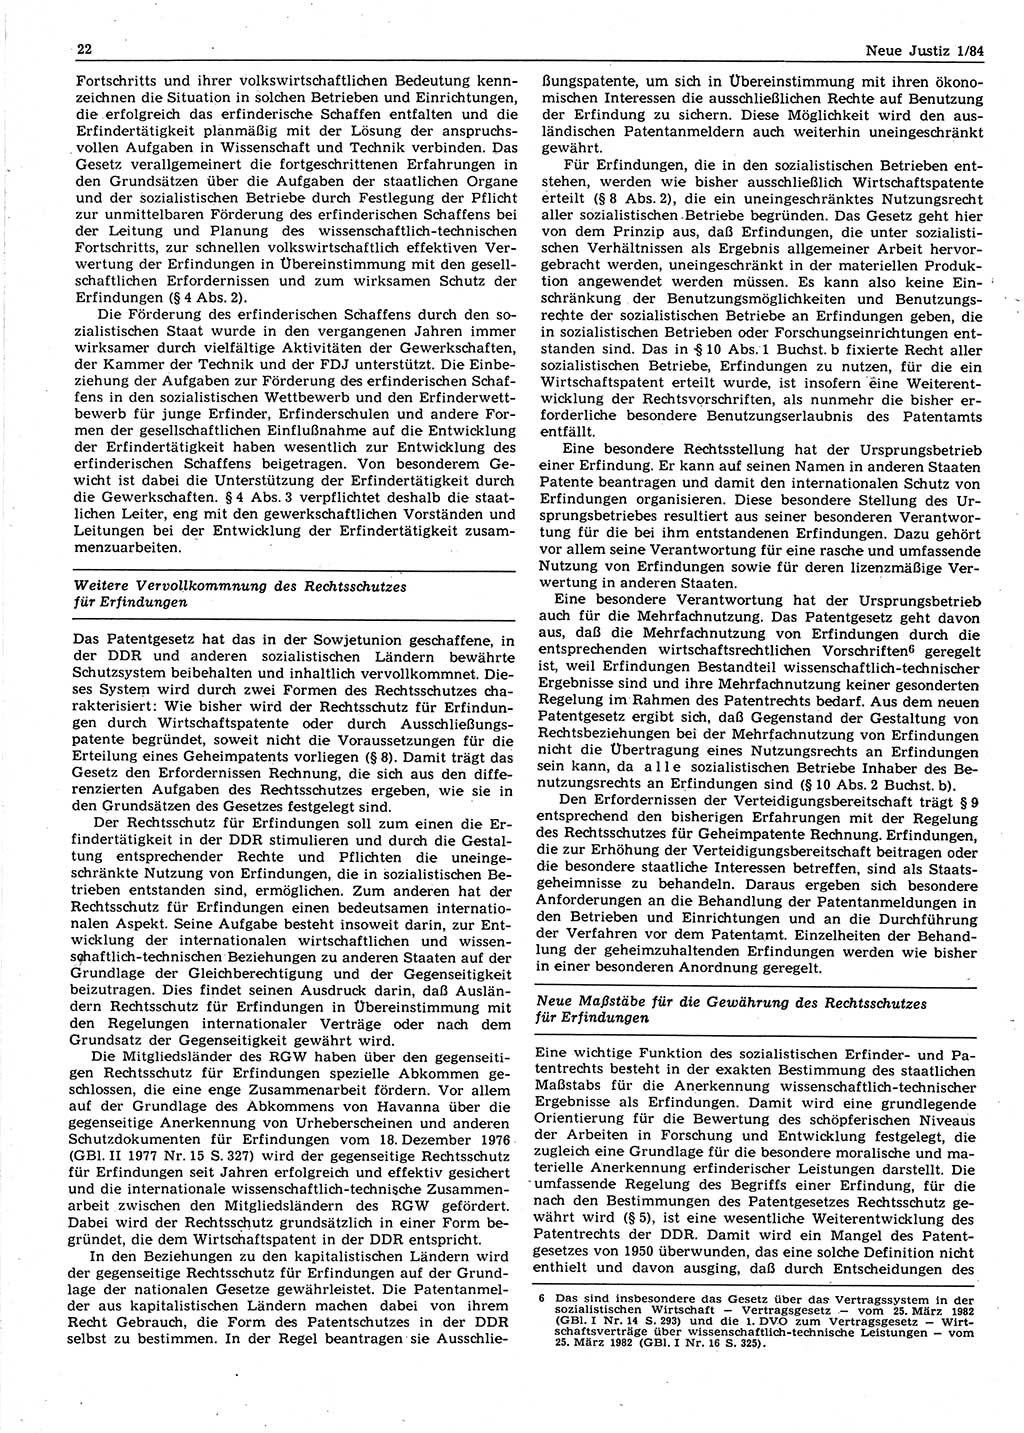 Neue Justiz (NJ), Zeitschrift für sozialistisches Recht und Gesetzlichkeit [Deutsche Demokratische Republik (DDR)], 38. Jahrgang 1984, Seite 22 (NJ DDR 1984, S. 22)